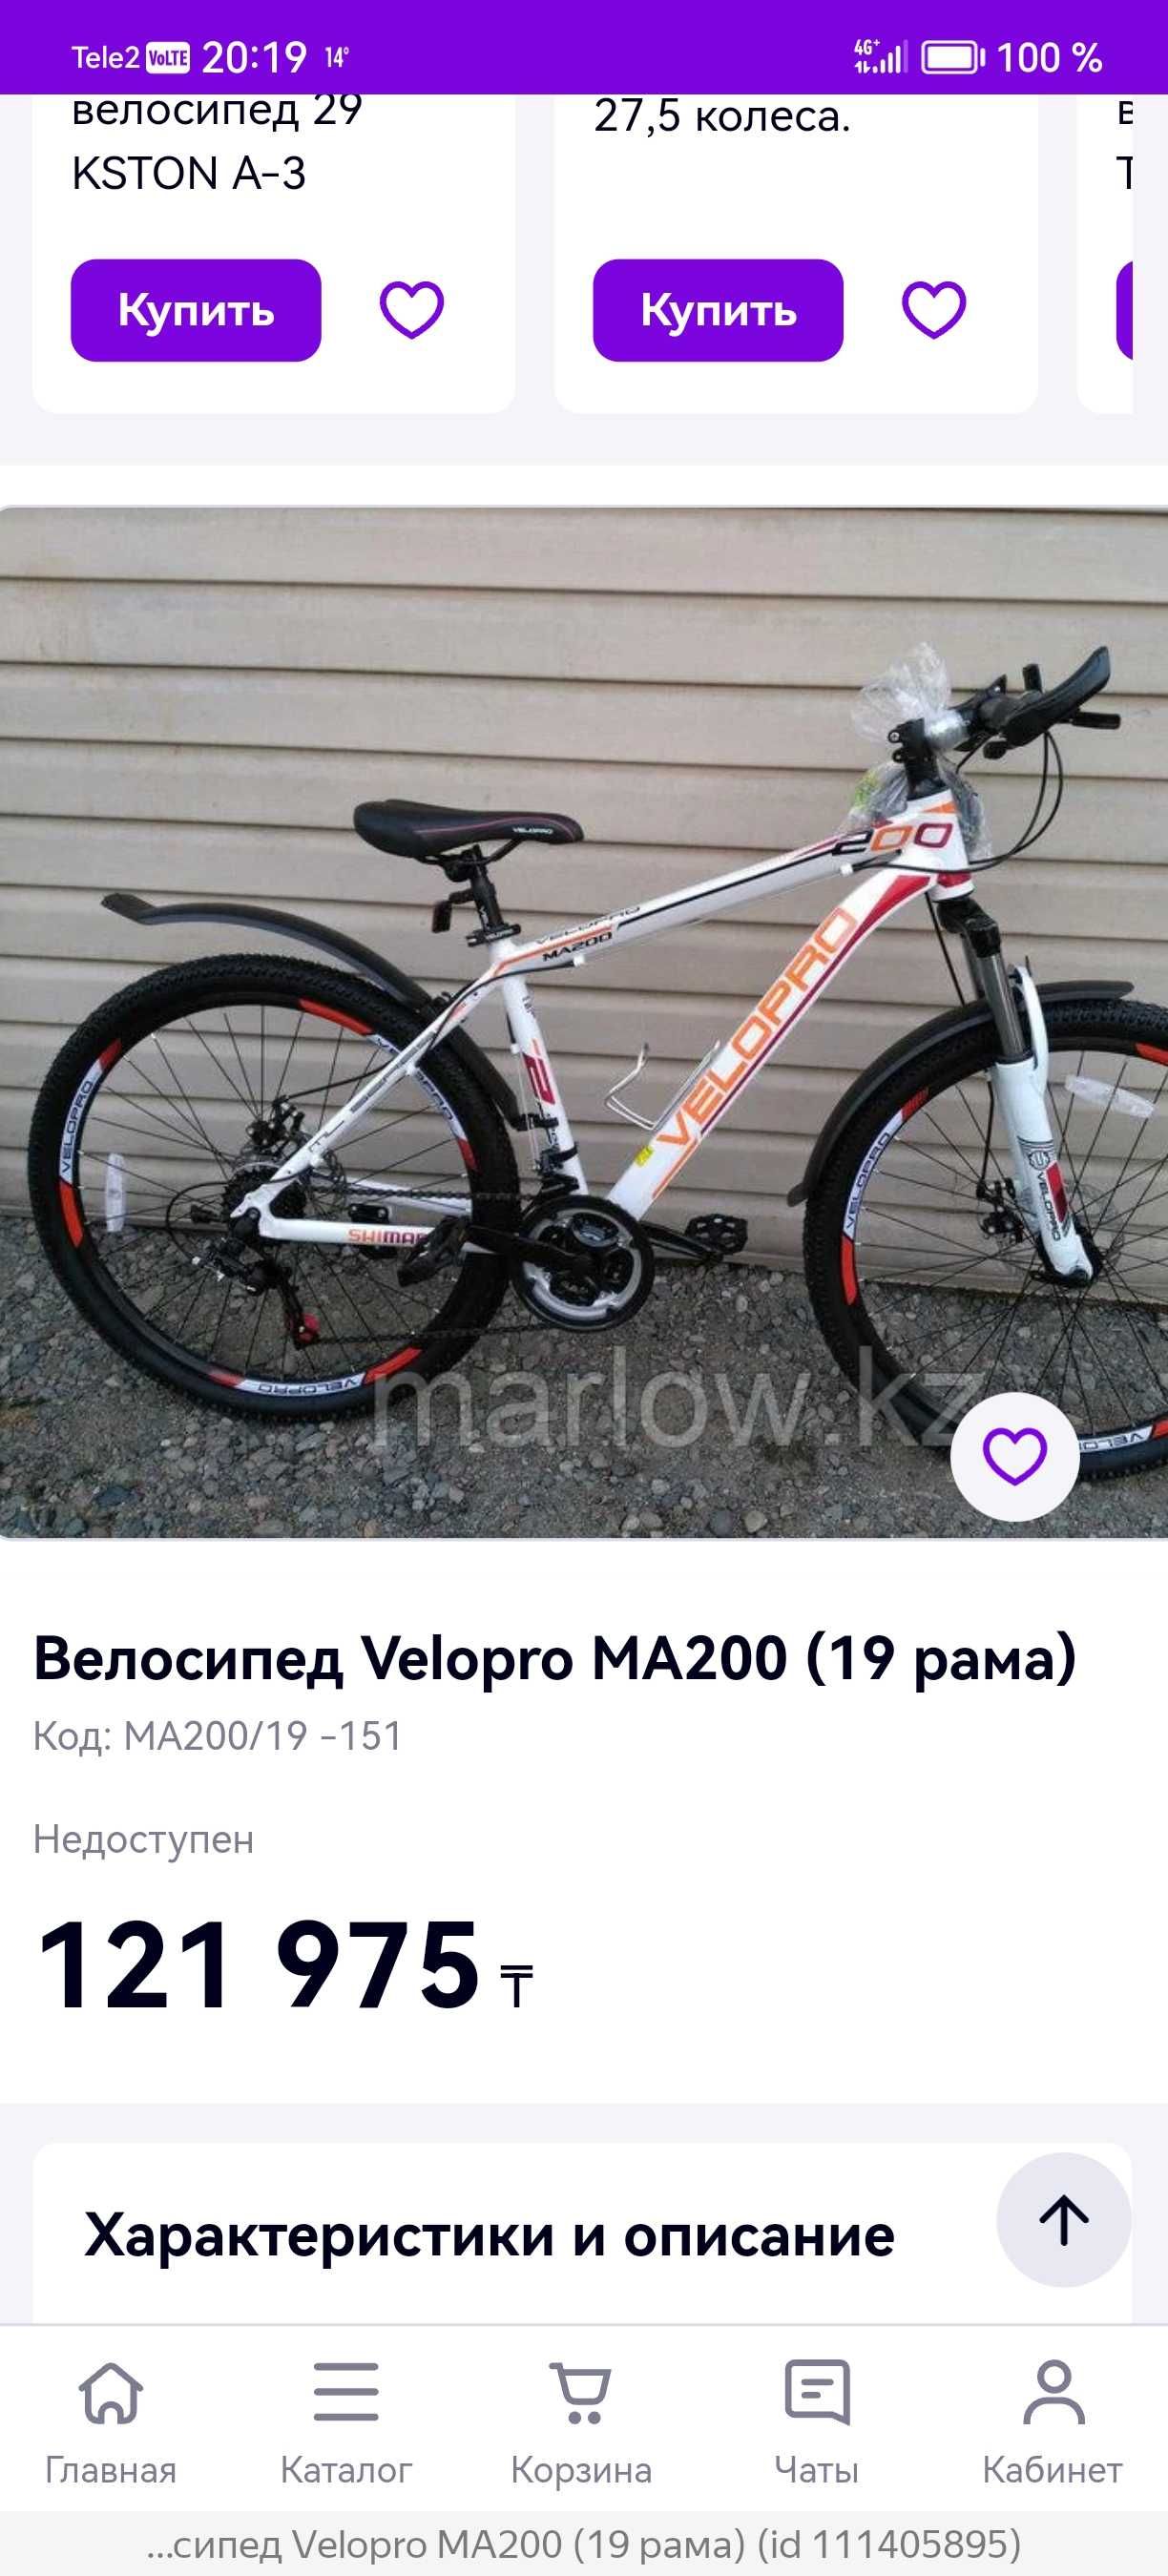 Велосипед velopro MA200